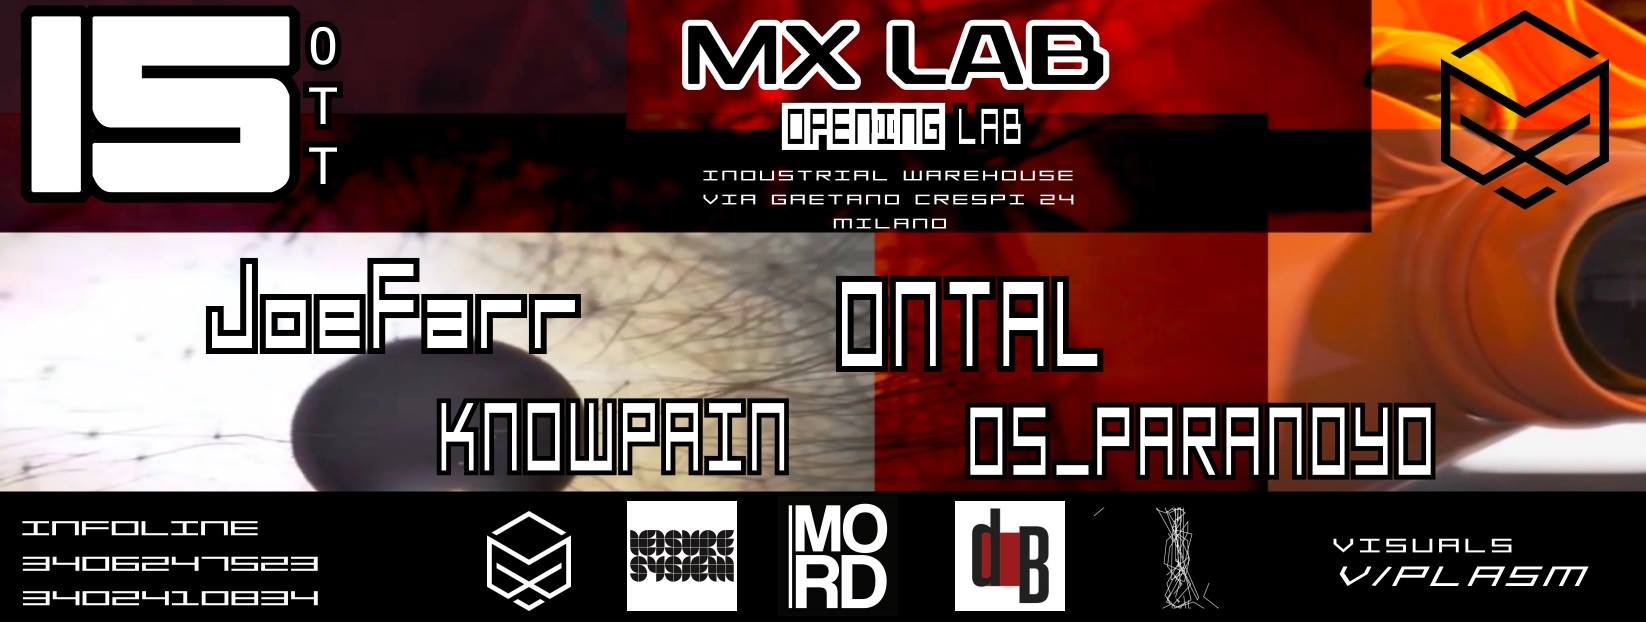 mx-lab-15-ottobre